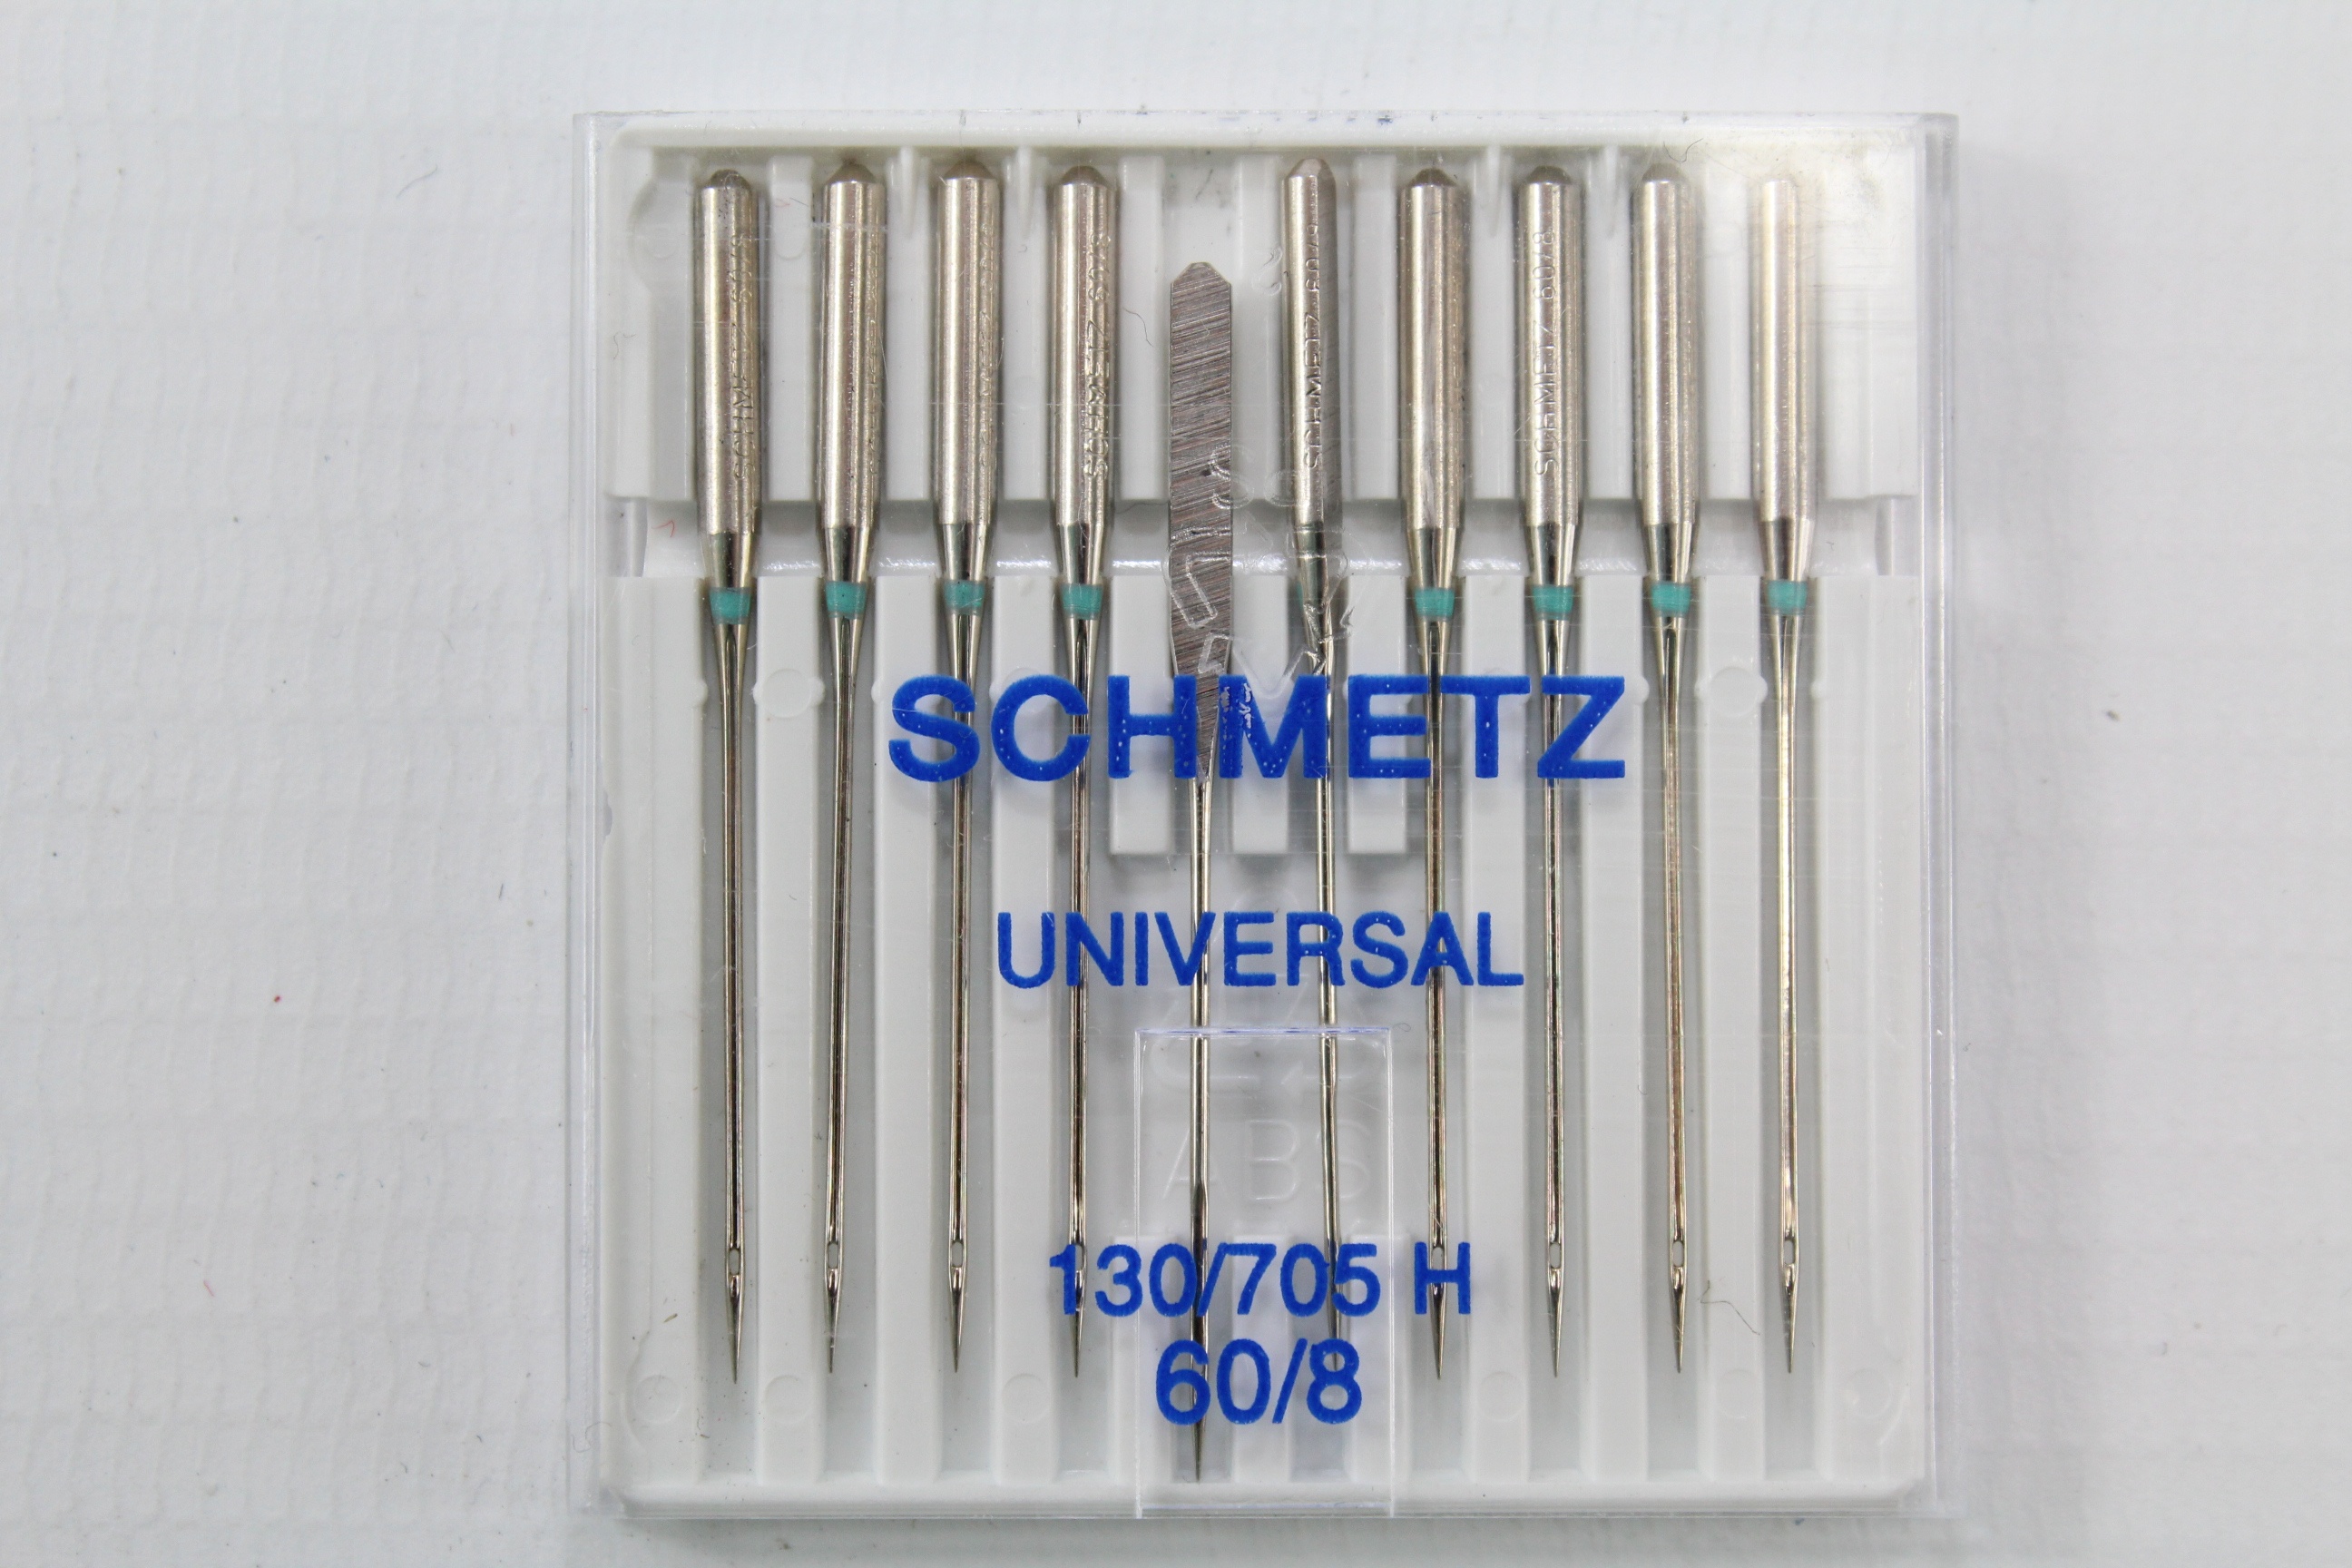 Schmetz Universal 130/705 H 60/8